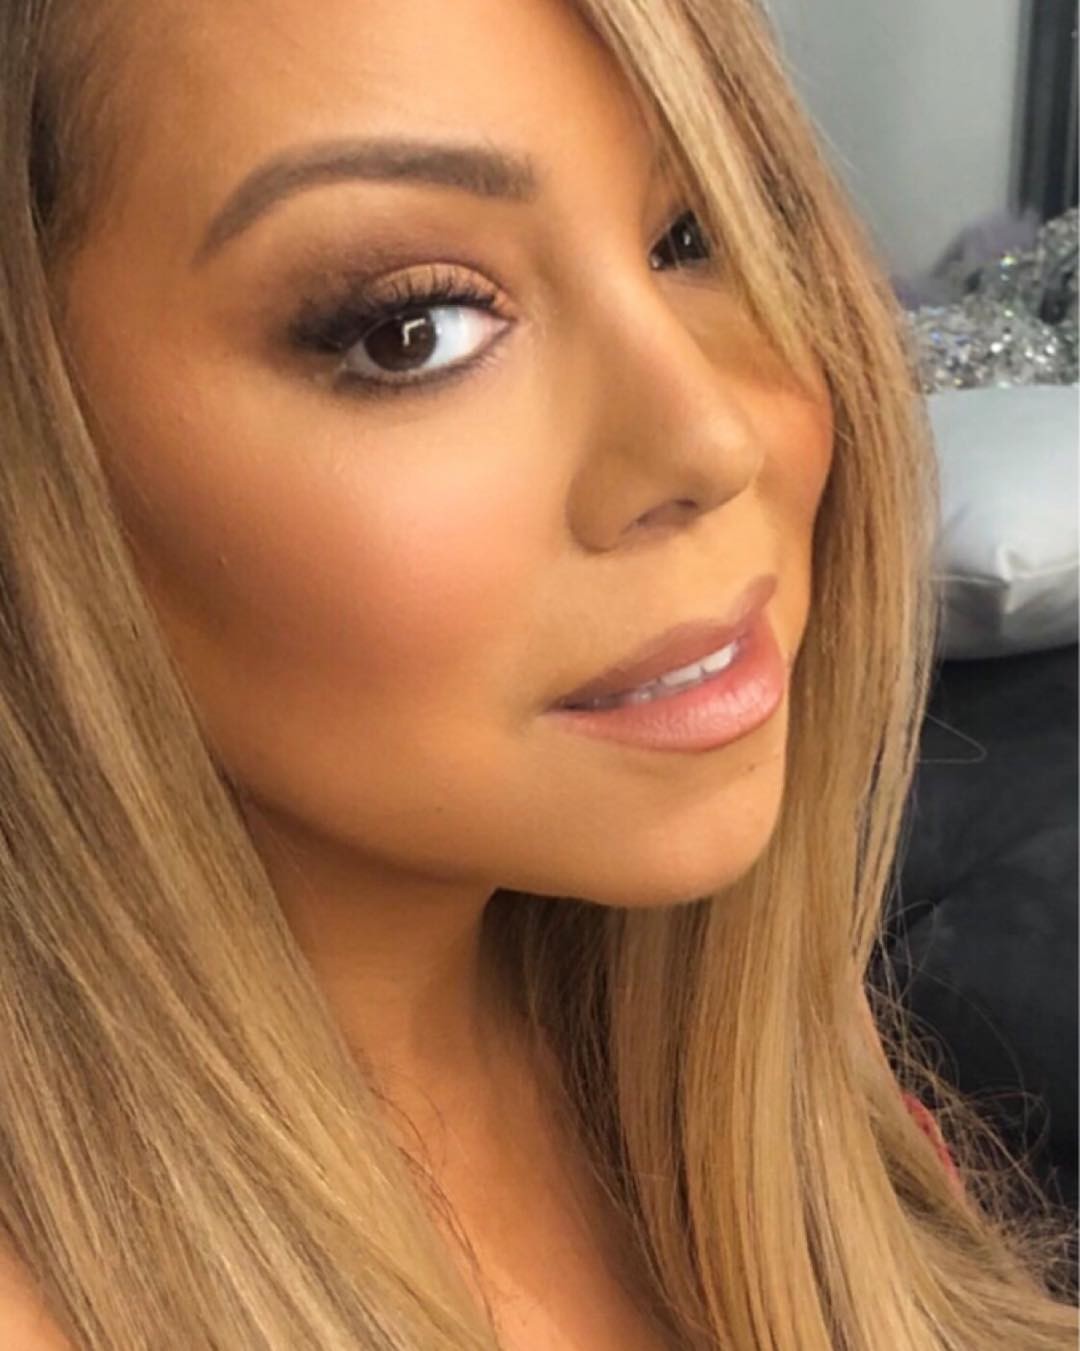 Foto recente da cantora Mariah Carey (Foto: Reprodução Instagram)